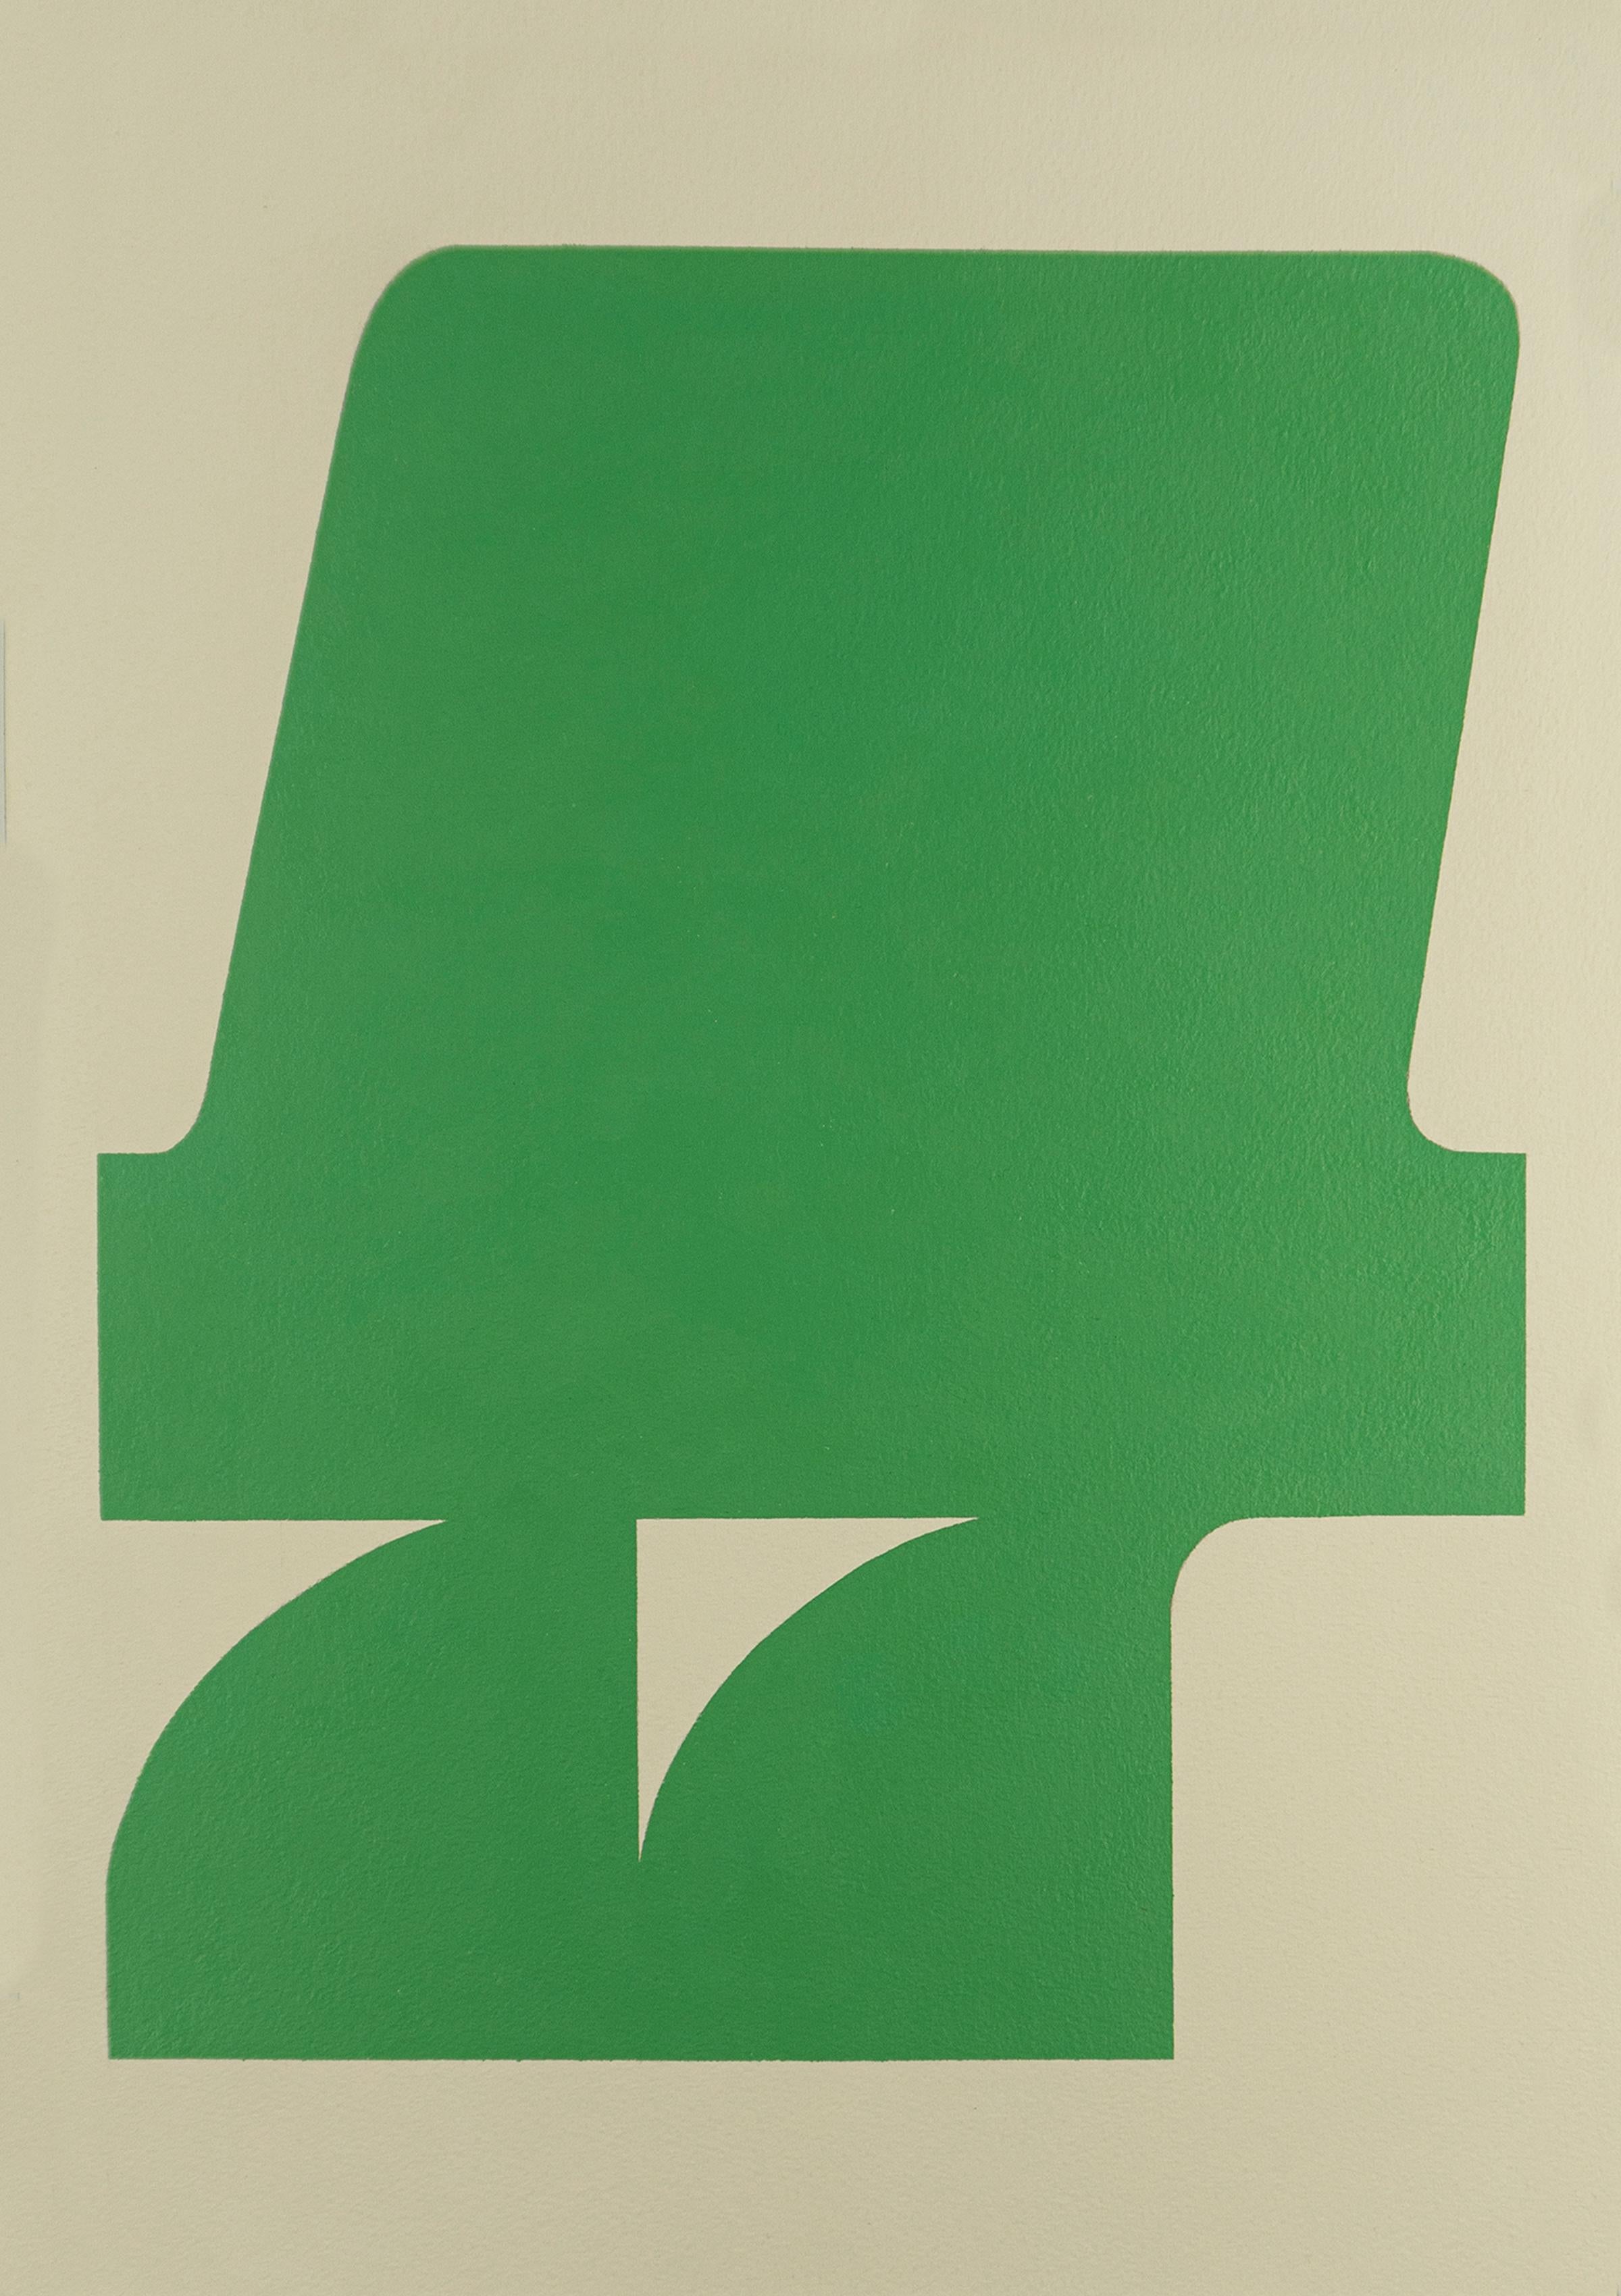 Formenform 12 (2019) – Abstrakte Form, minimalistische, gestische Form, Grün und Weiß auf Papier